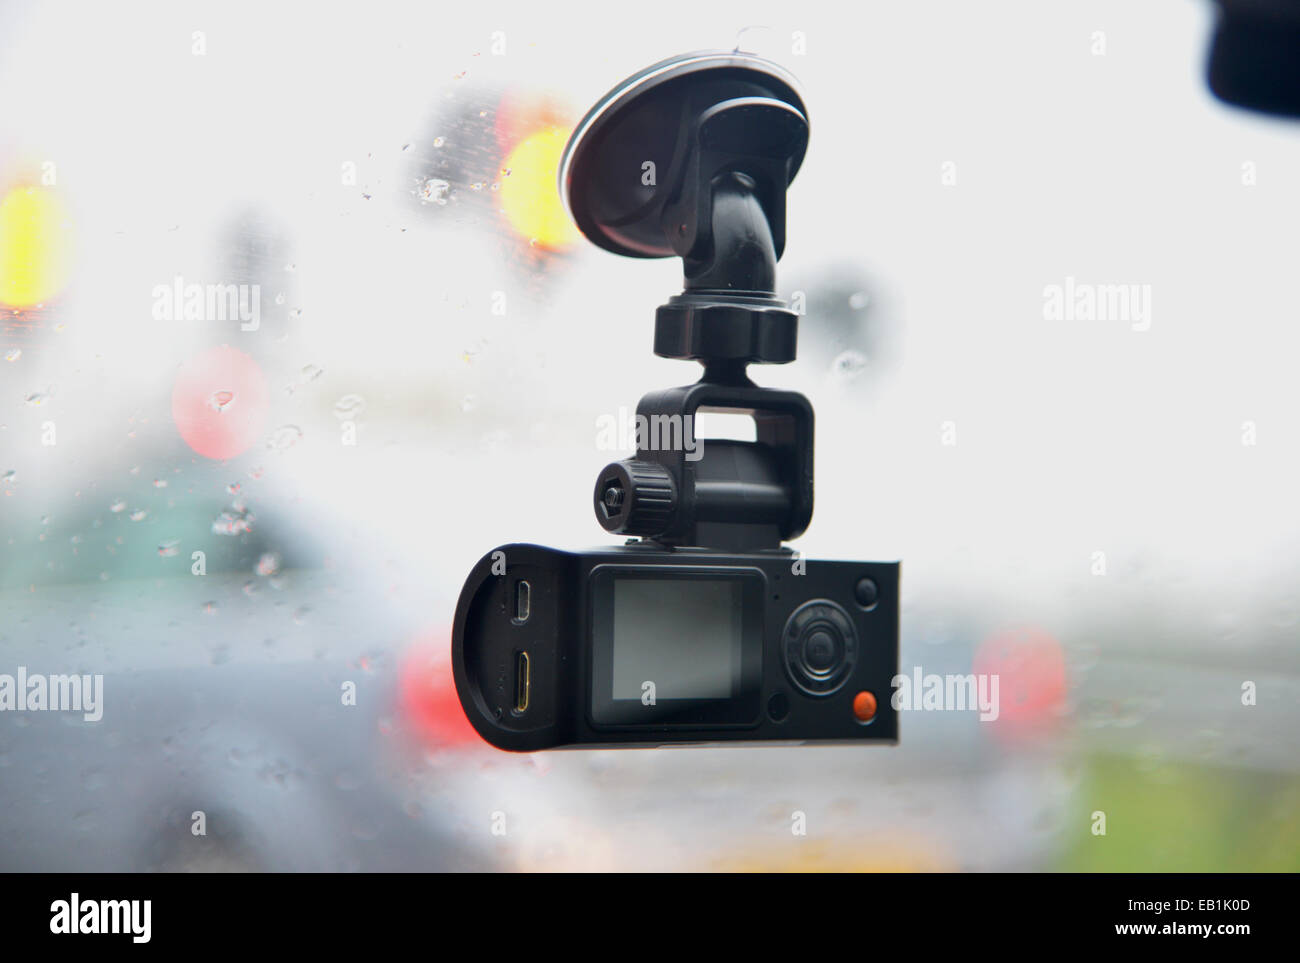 https://c8.alamy.com/comp/EB1K0D/dash-cam-car-windscreen-video-camera-EB1K0D.jpg